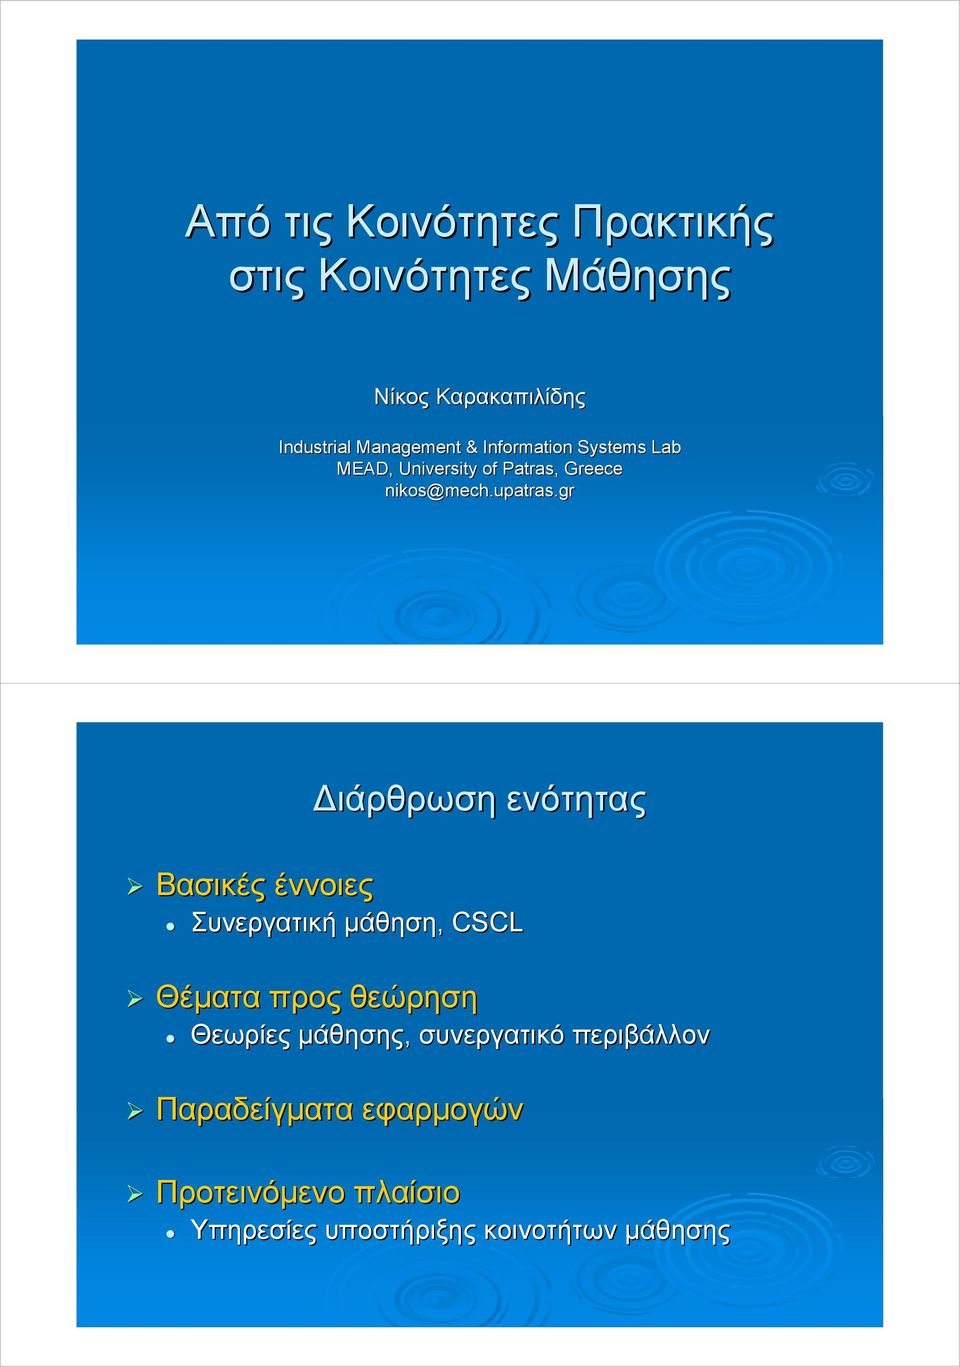 gr Βασικές έννοιες ιάρθρωση ενότητας Συνεργατική µάθηση, CSCL Θέµατα προς θεώρηση Θεωρίες